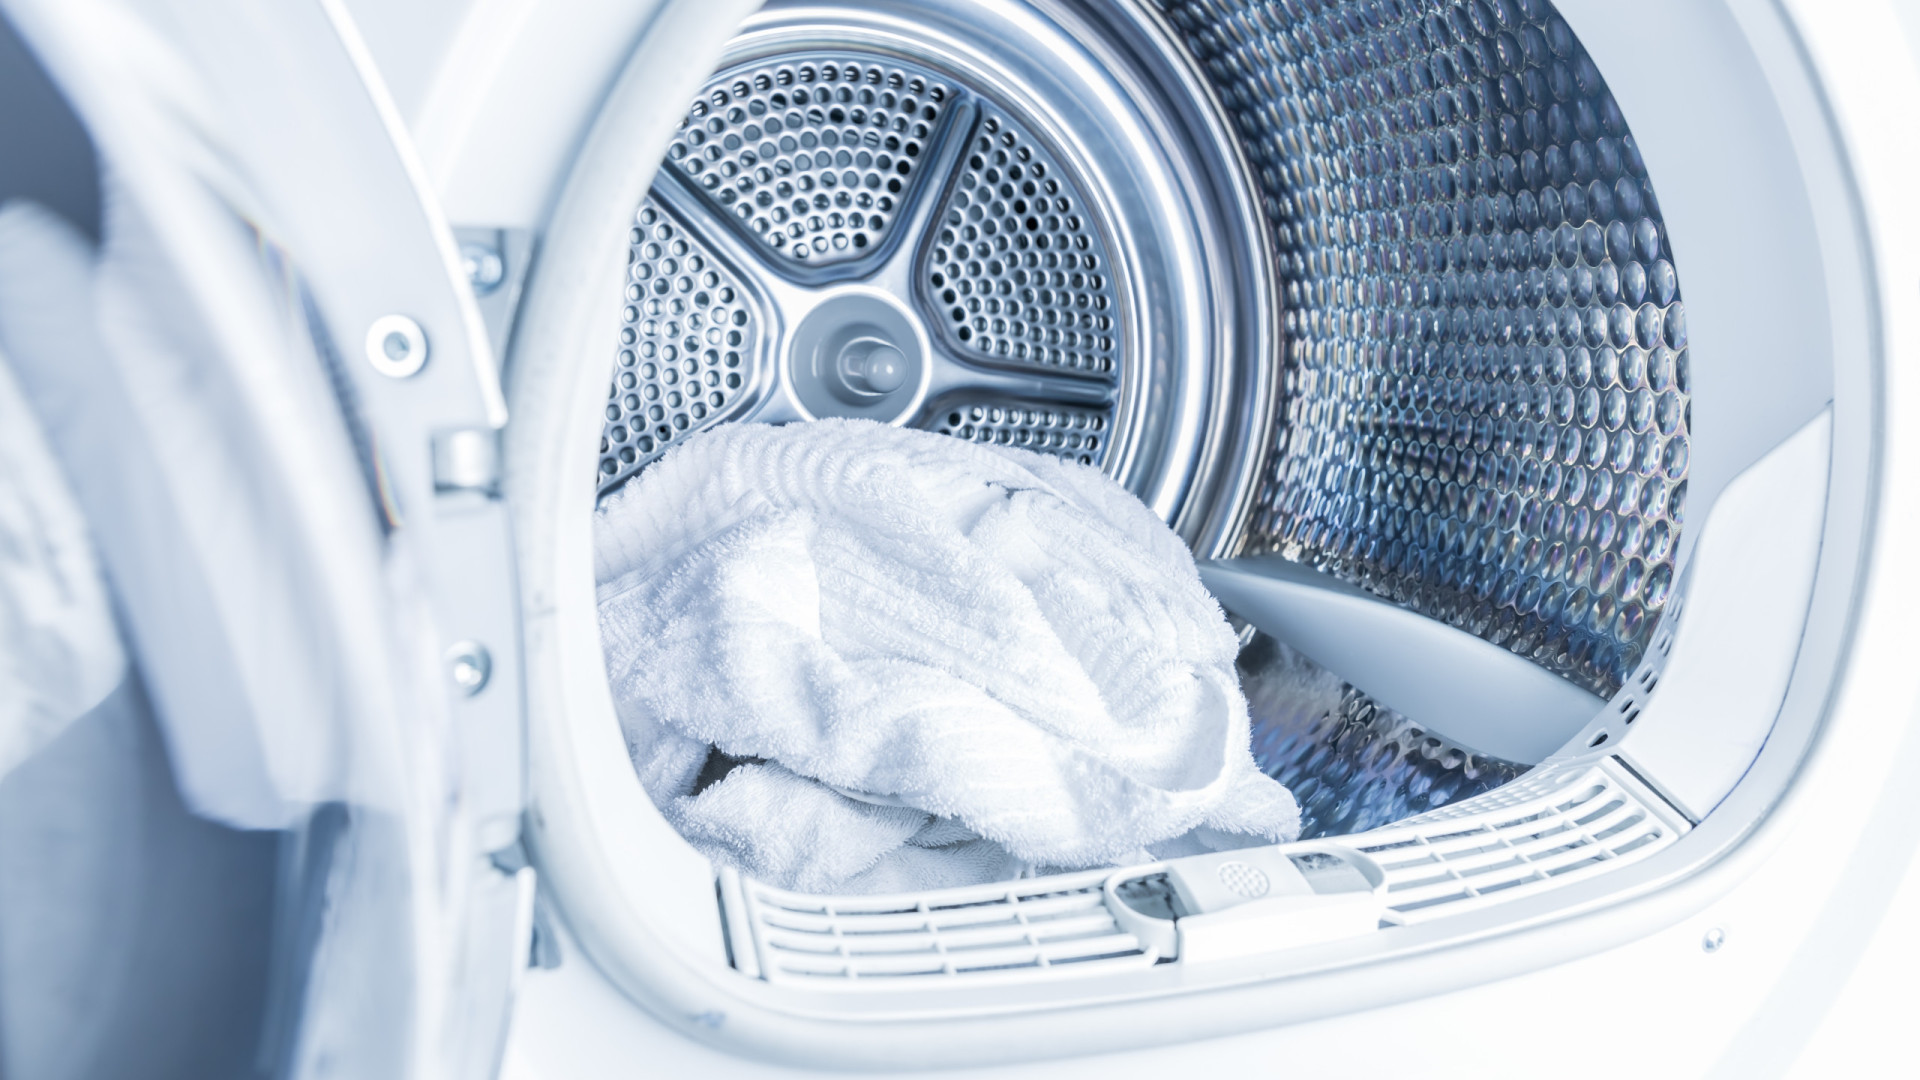 Sente um cheiro ruim vindo da máquina de lavar roupa? Resolva assim